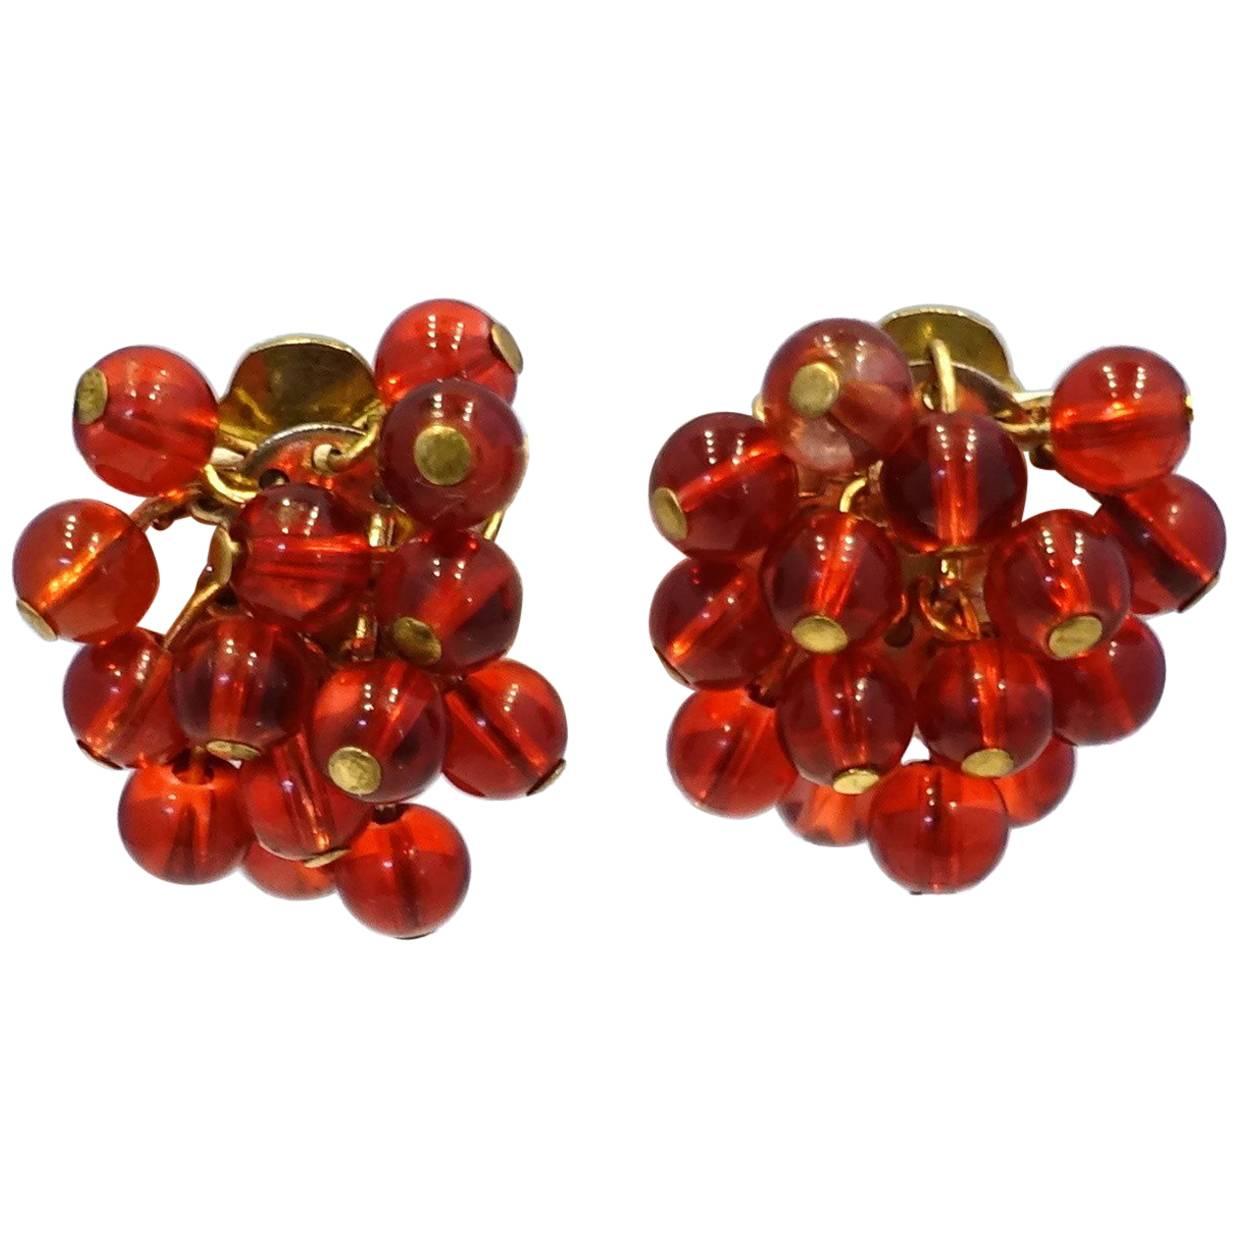 DeMario Signed Vintage Red Bead Earrings, 1950s 